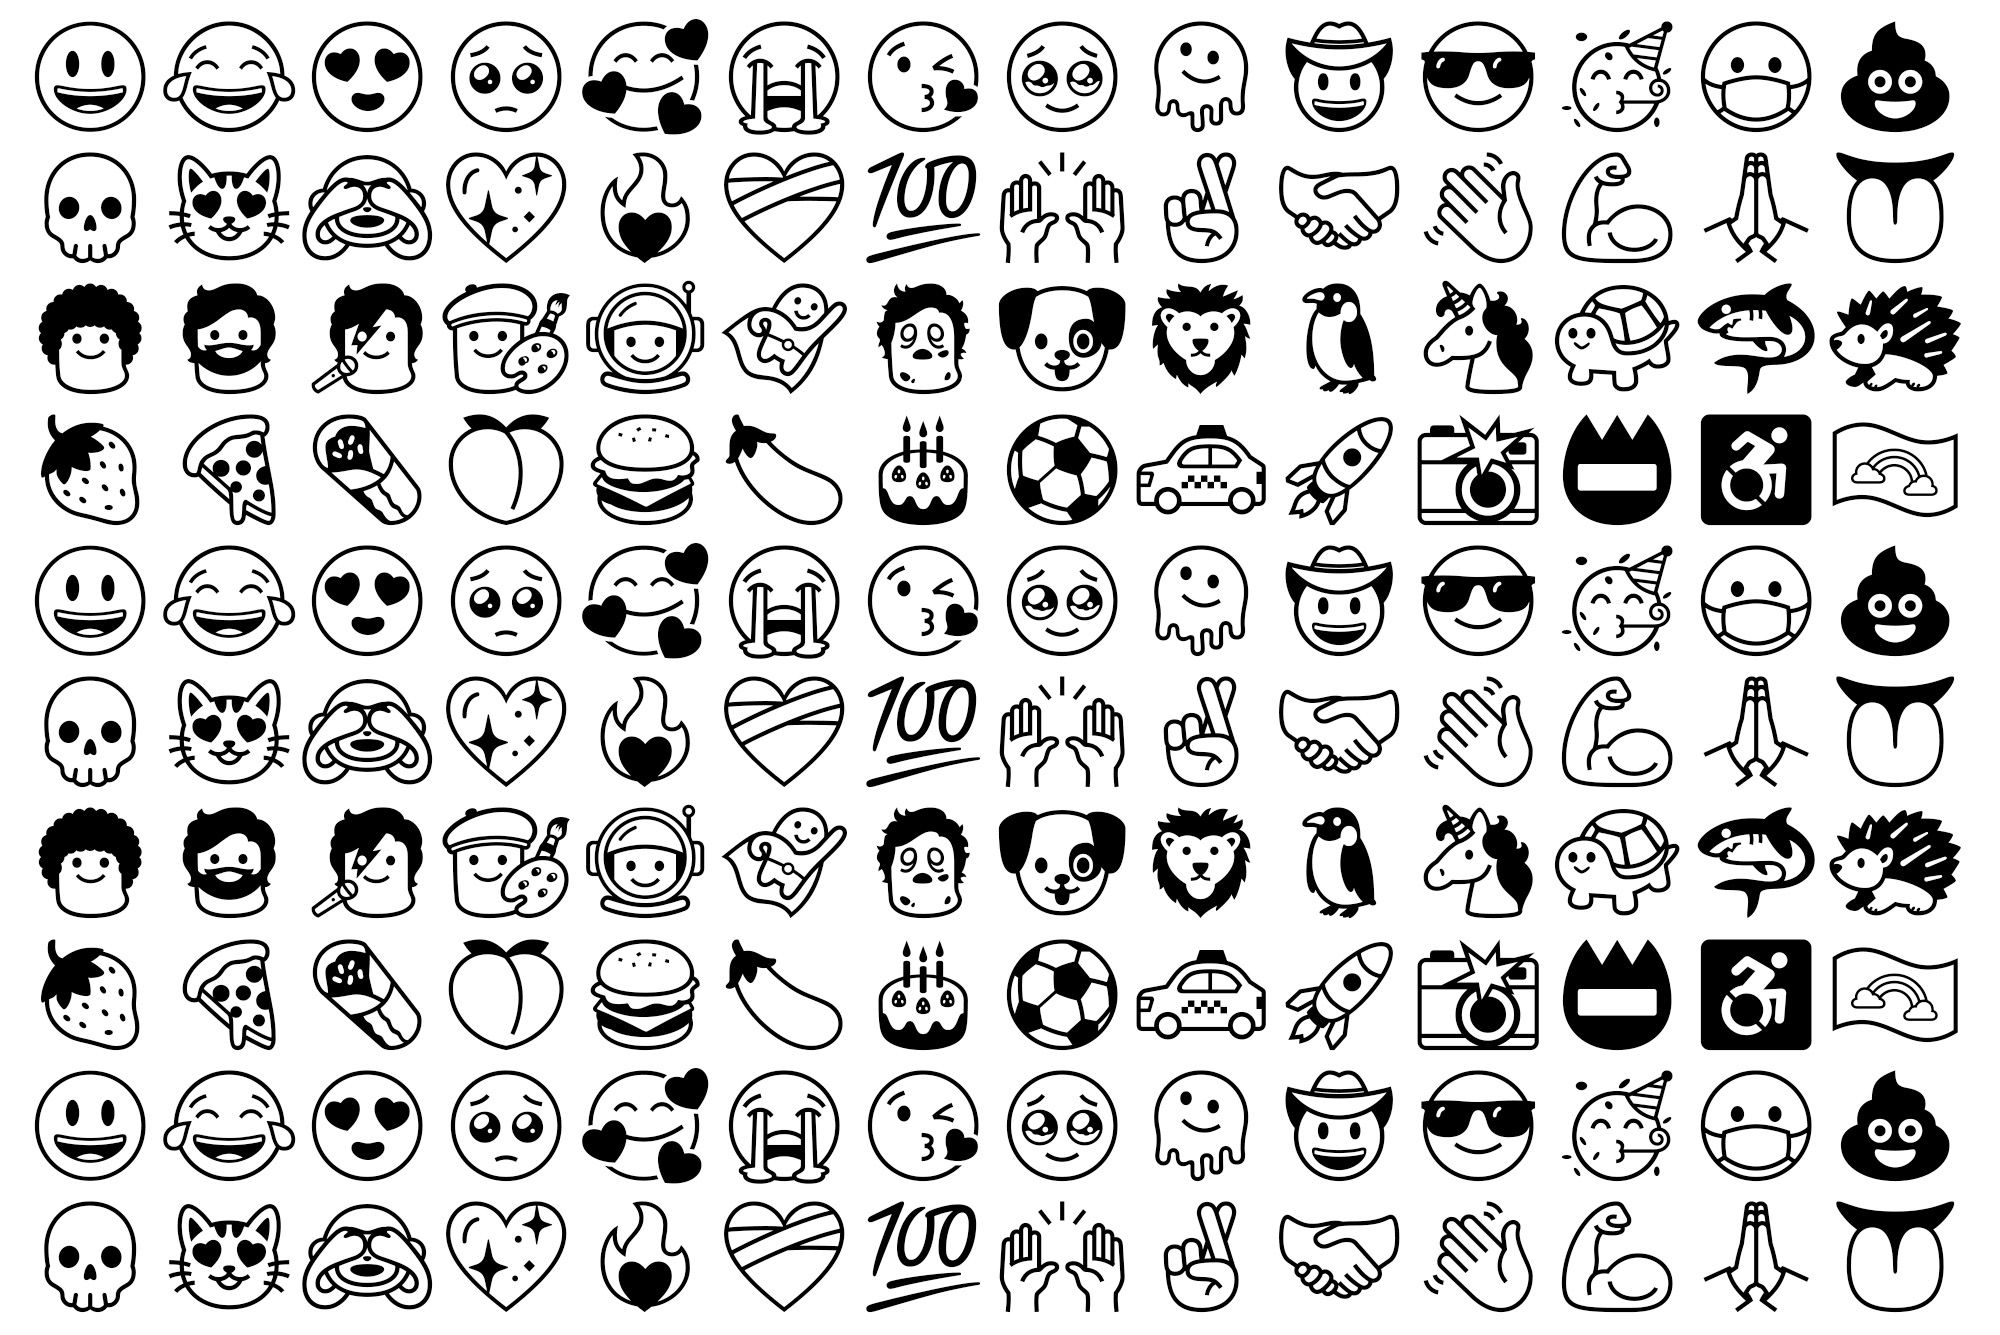 Font emojis